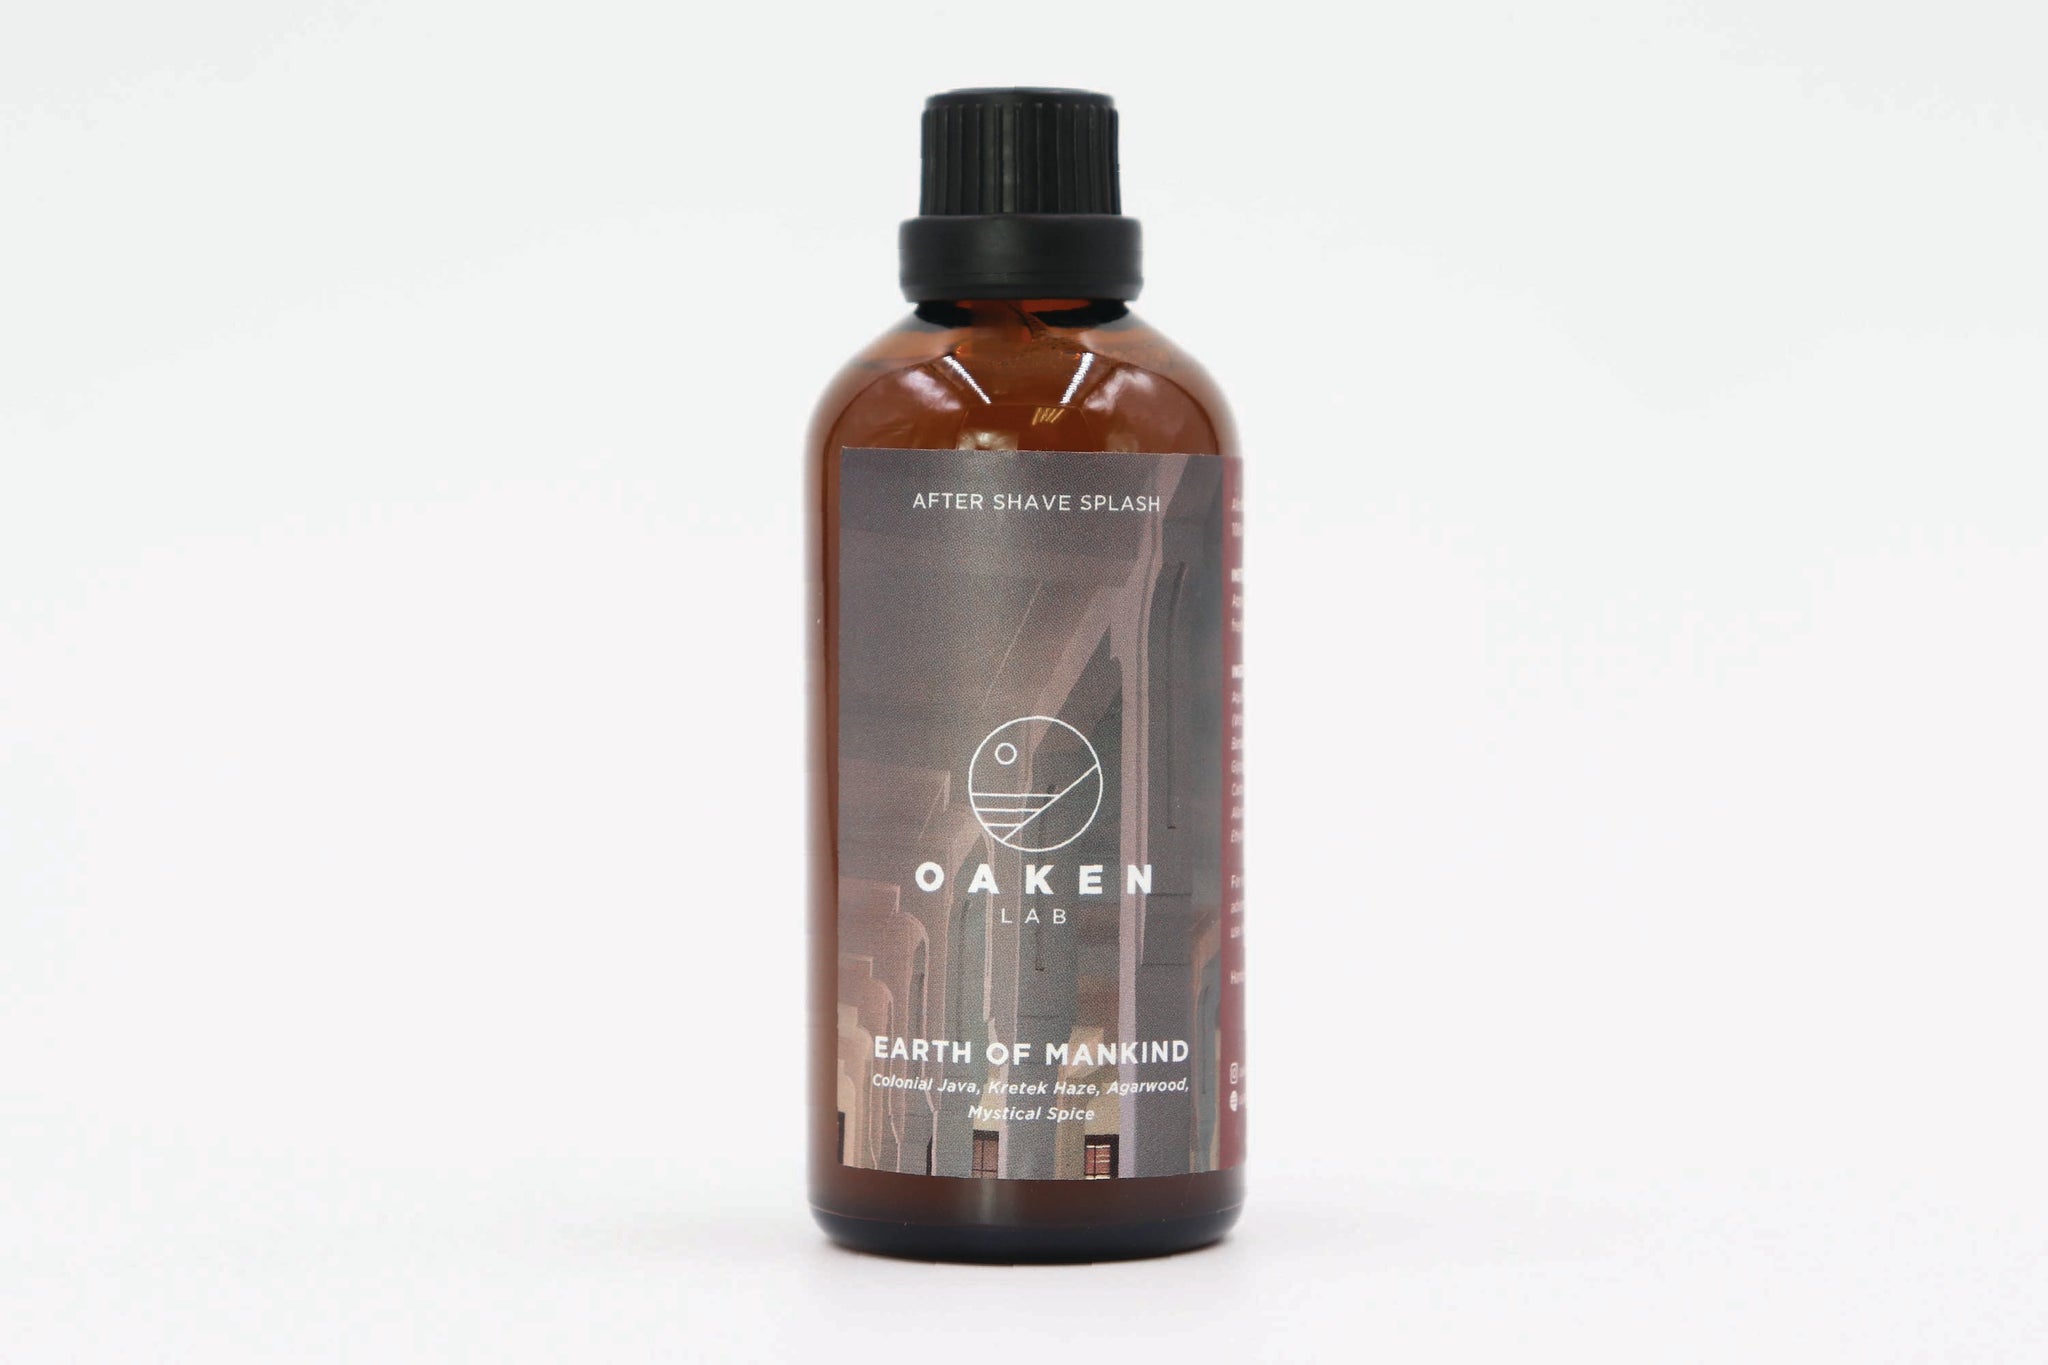 Oaken Lab 'Earth of Mankind' Aftershave Splash